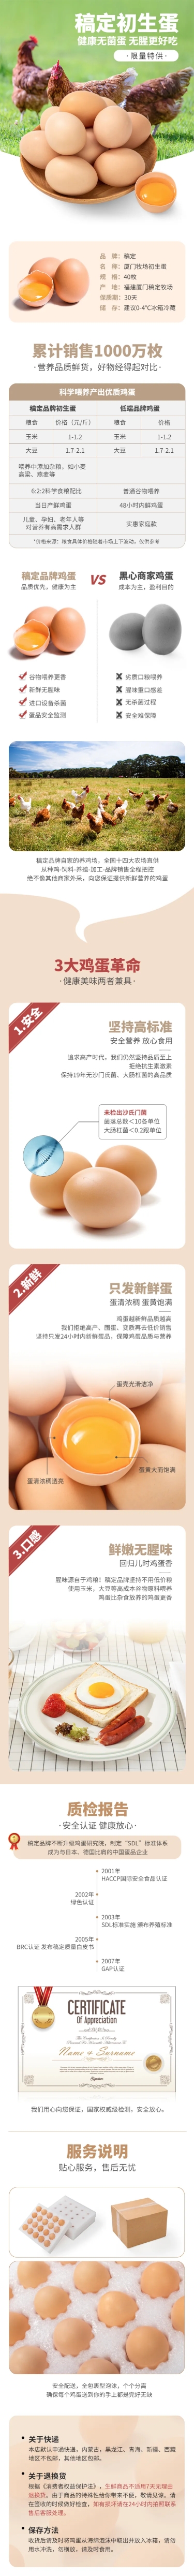 食品生鲜特产蛋类鸡蛋详情页预览效果